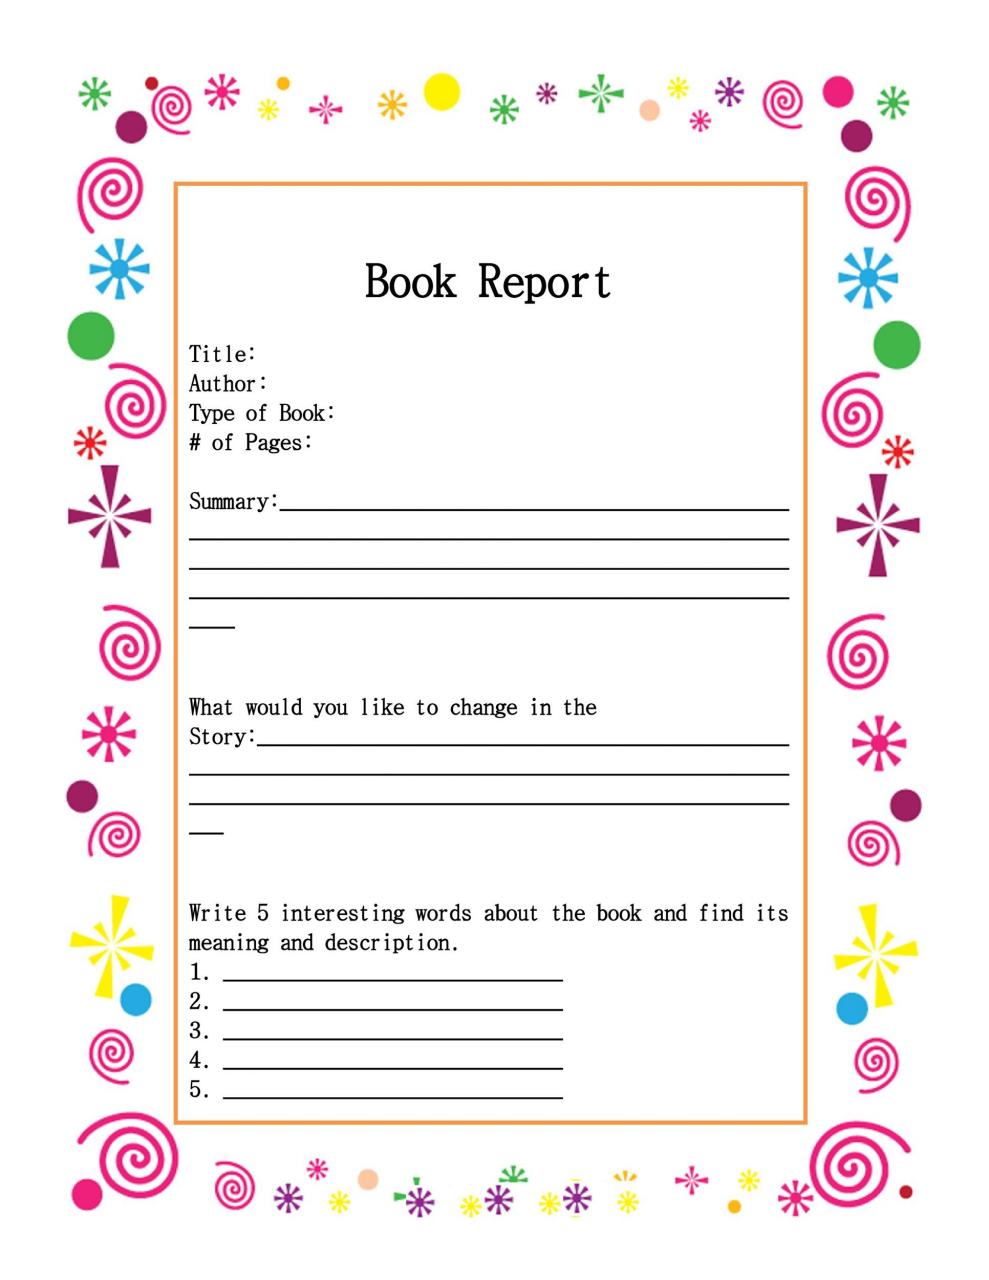 Plantilla de informe de libro gratis 12